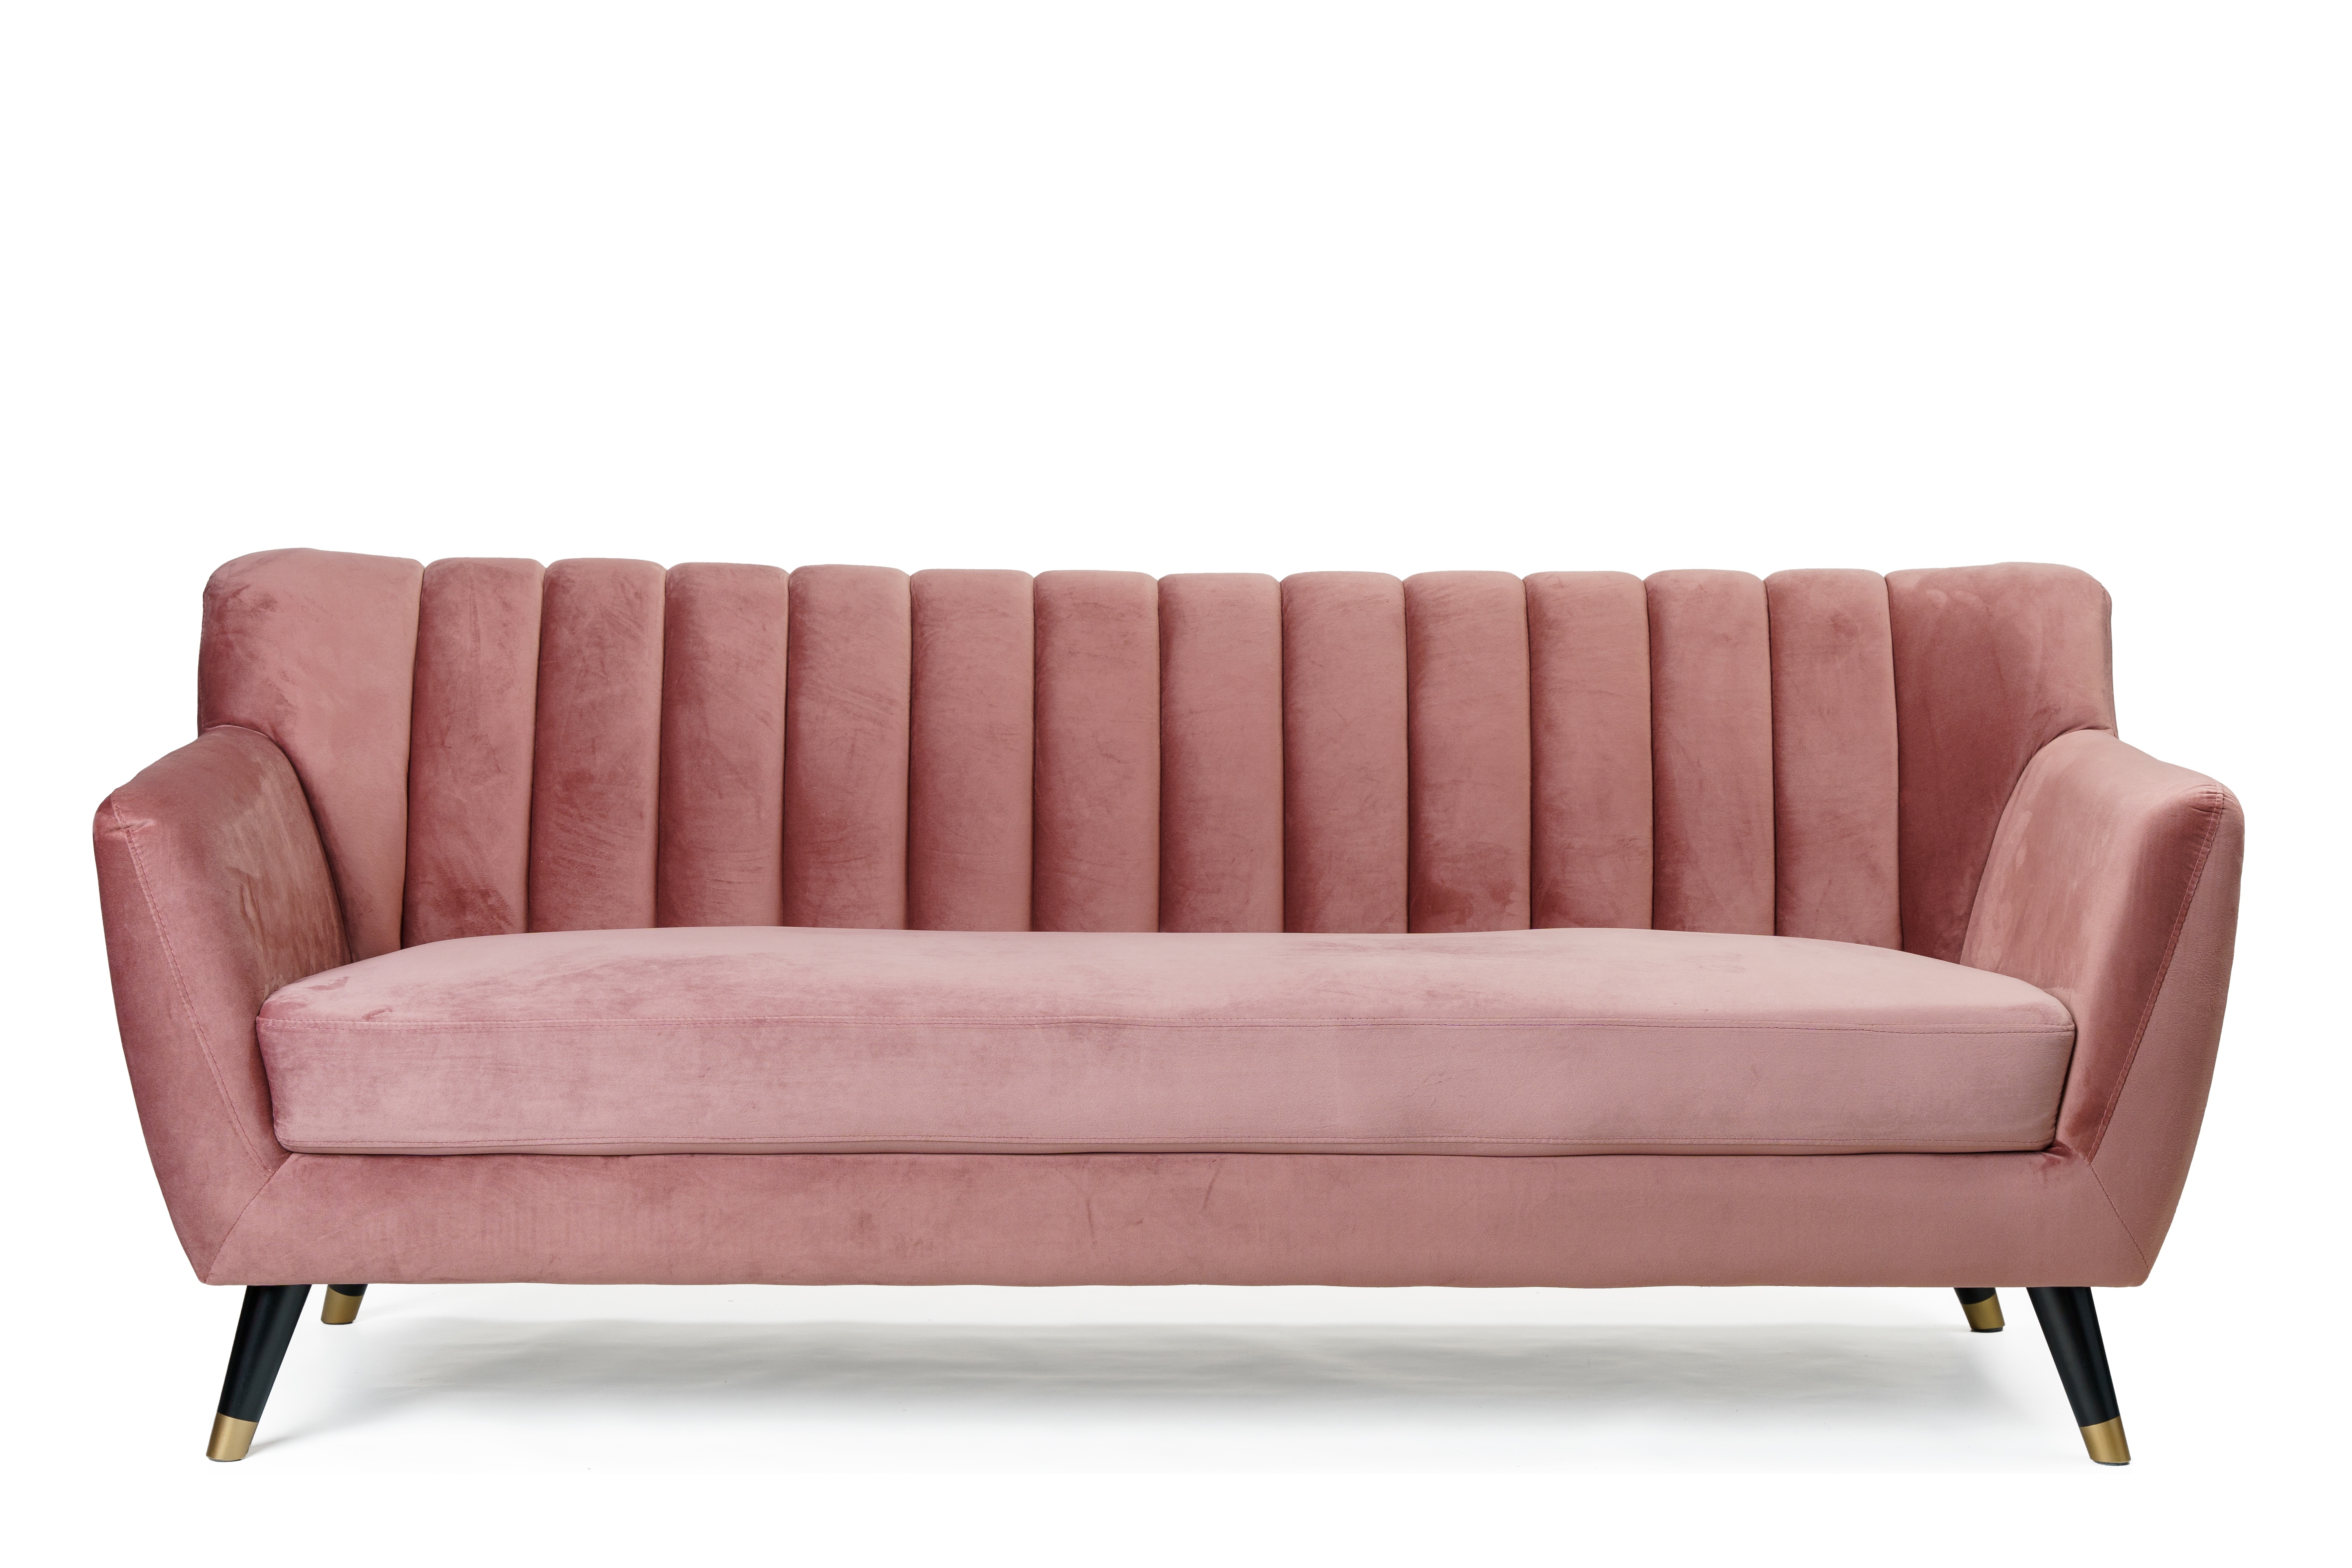 Диван kj2021-196 розовый kelly lounge розовый 196x80x83 см.